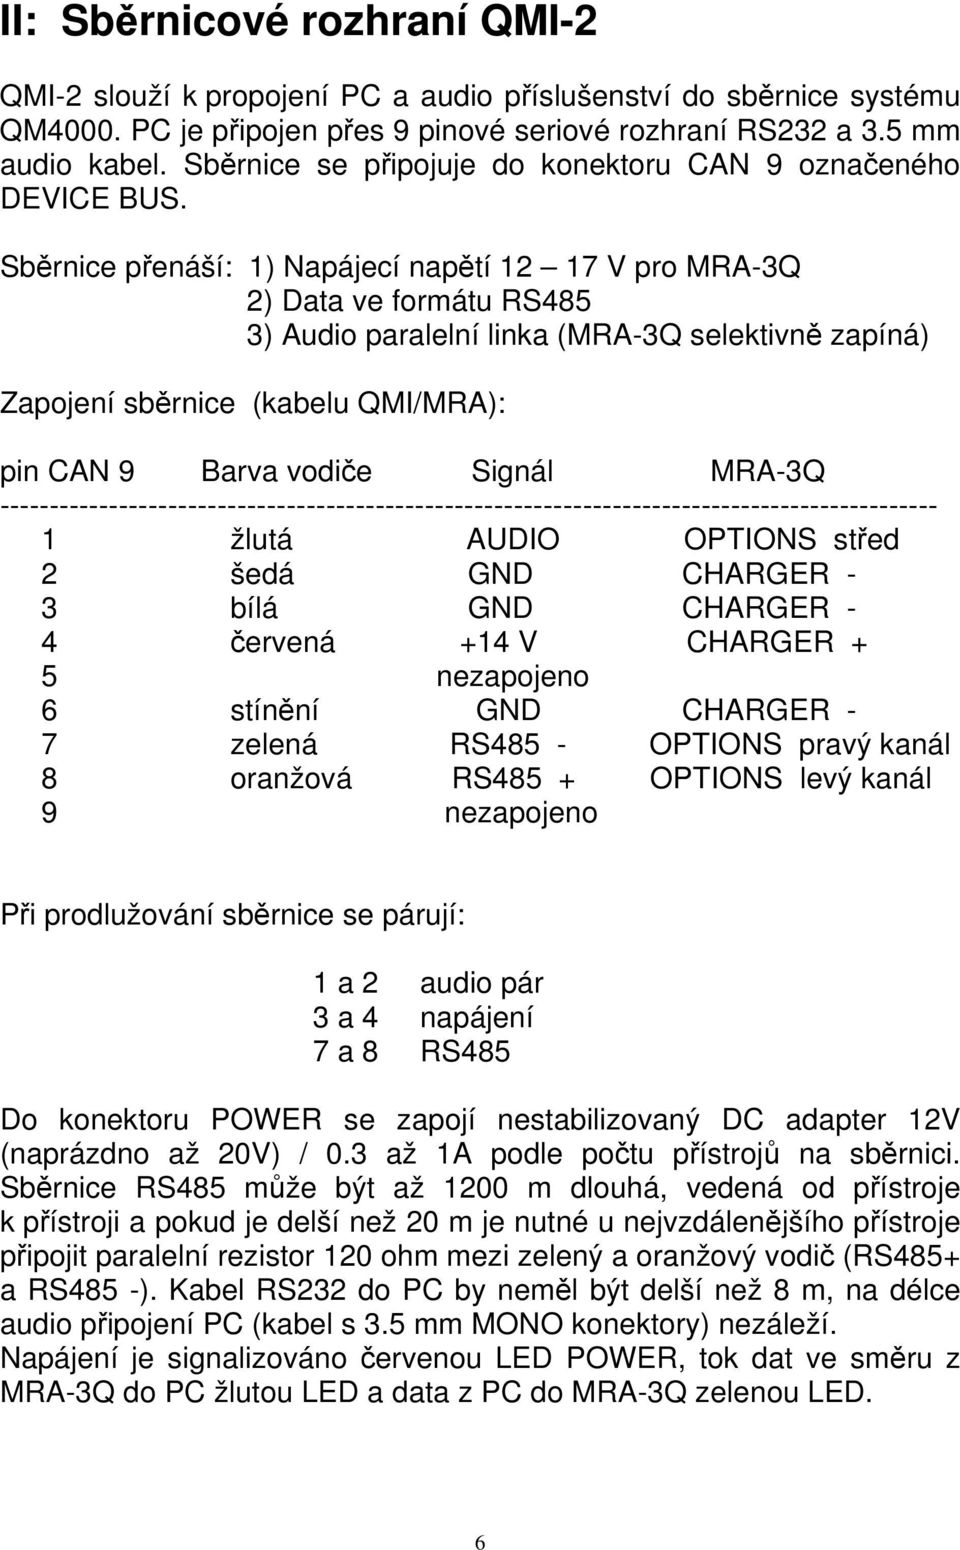 Sběrnice přenáší: 1) Napájecí napětí 12 17 V pro MRA-3Q 2) Data ve formátu RS485 3) Audio paralelní linka (MRA-3Q selektivně zapíná) Zapojení sběrnice (kabelu QMI/MRA): pin CAN 9 Barva vodiče Signál